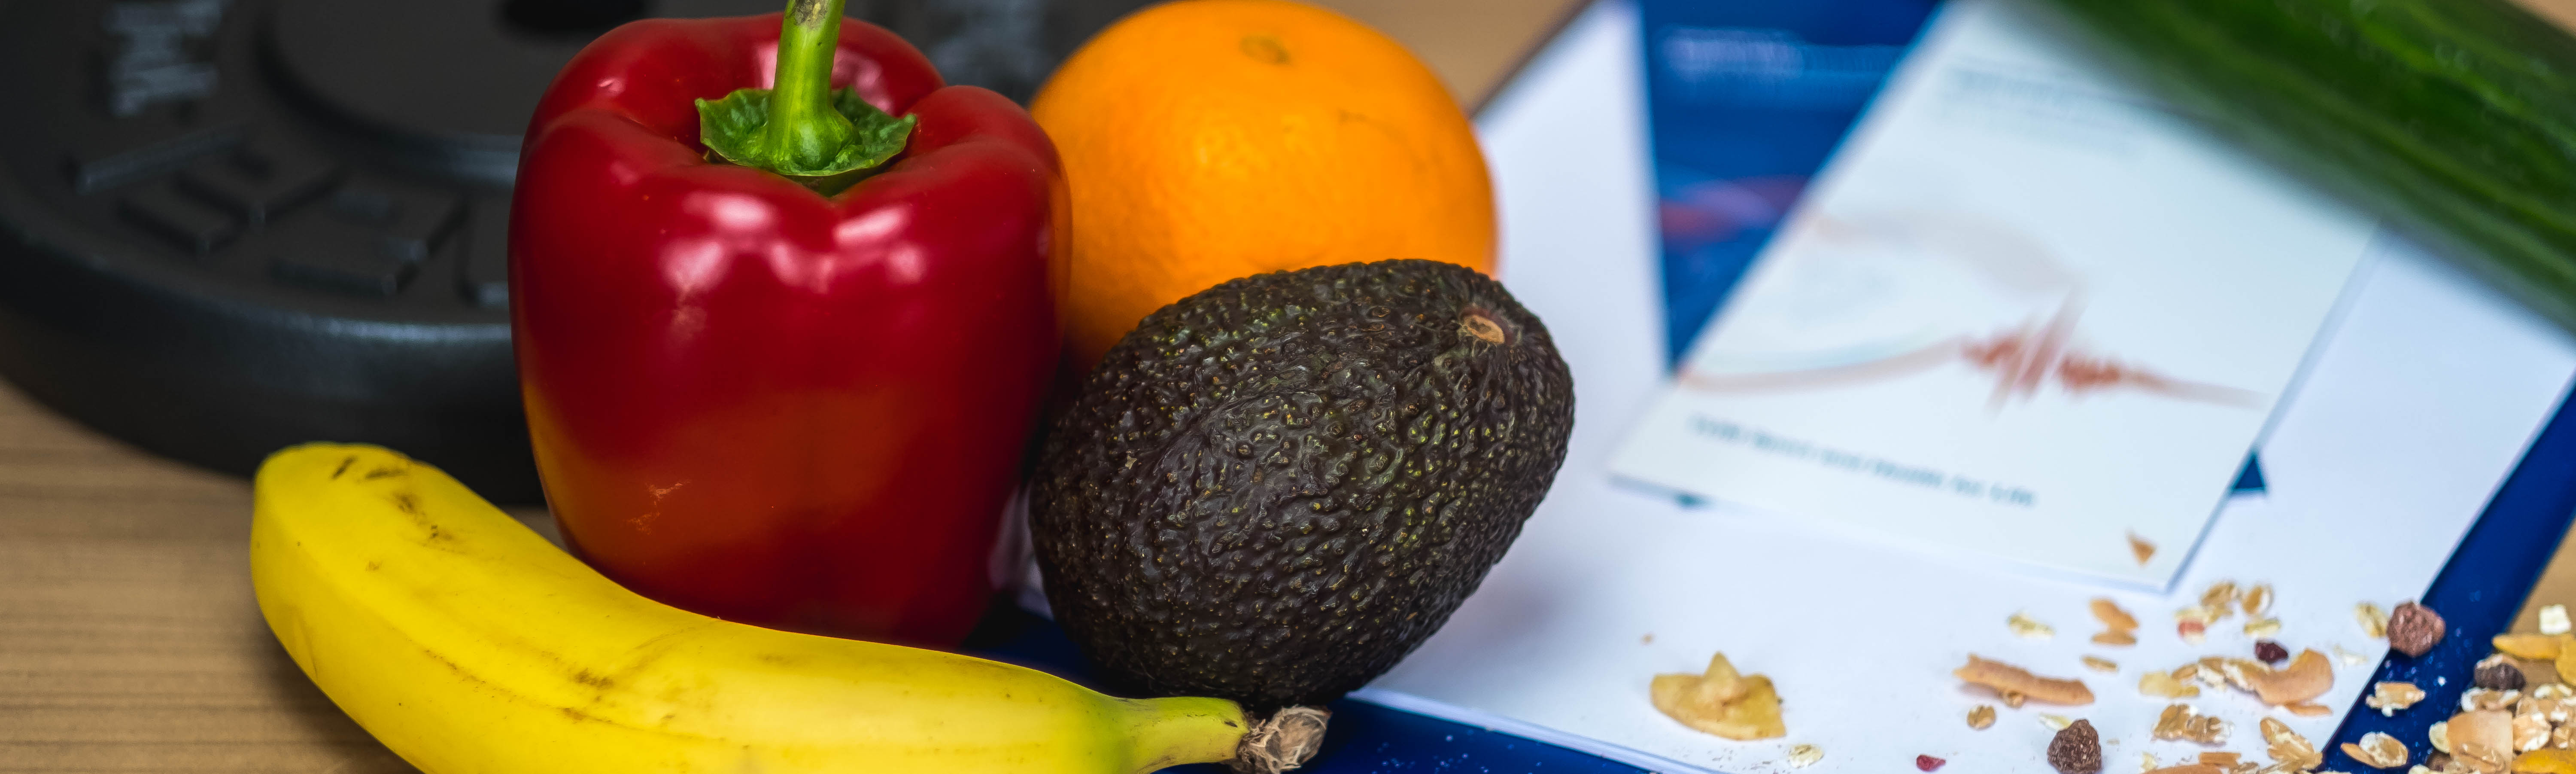 Verschiedenes Obst und Gemüse 